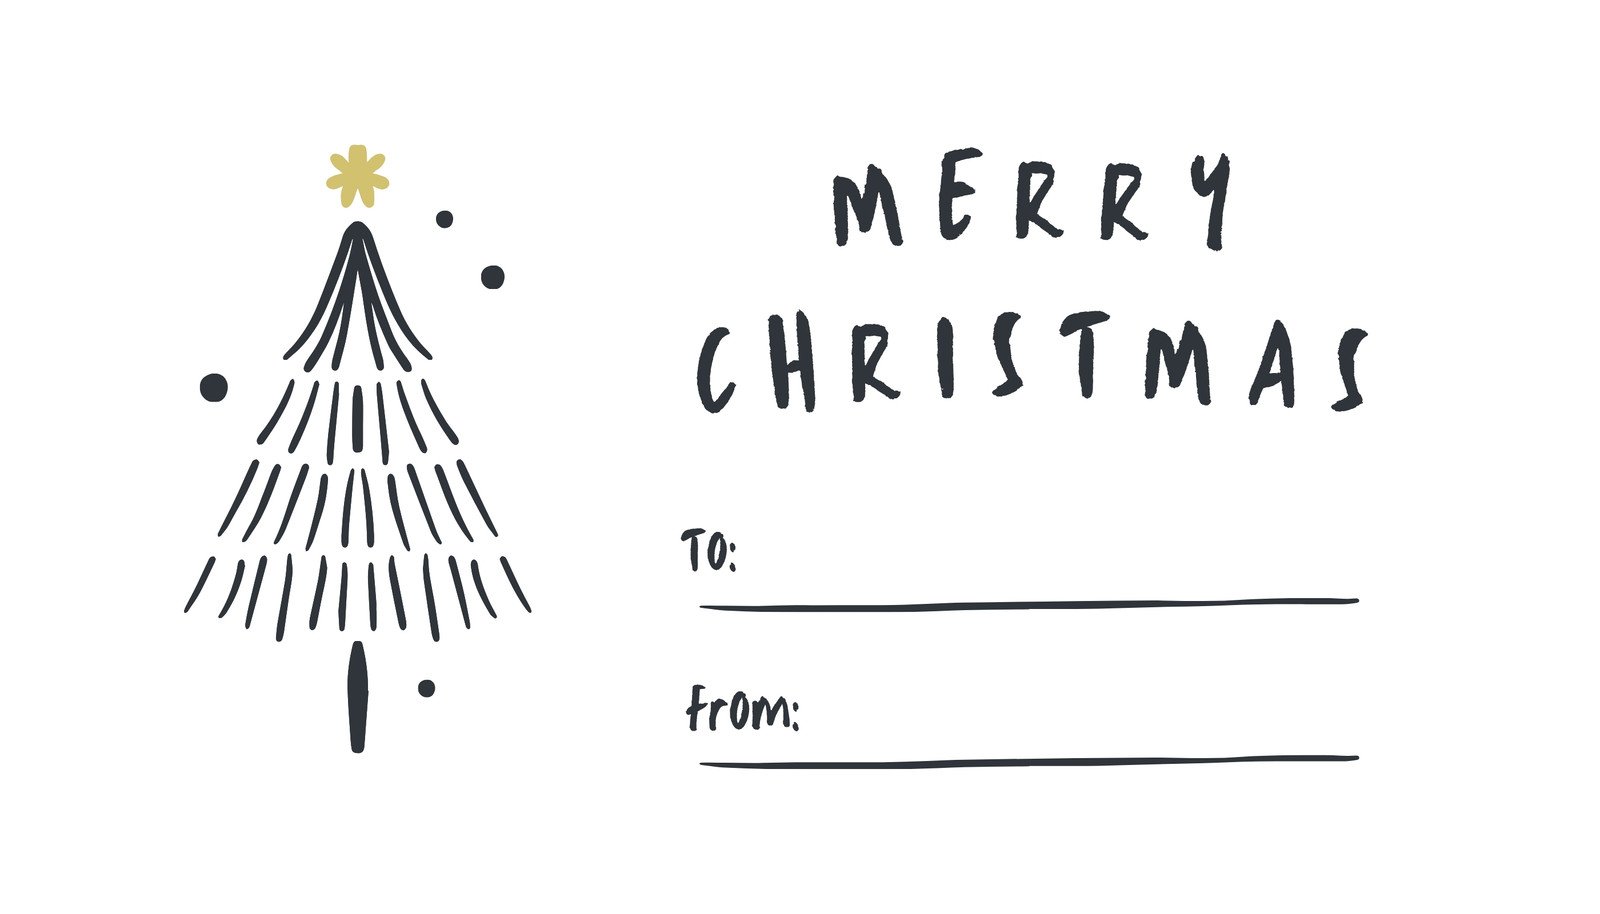 Free custom printable Christmas tag templates